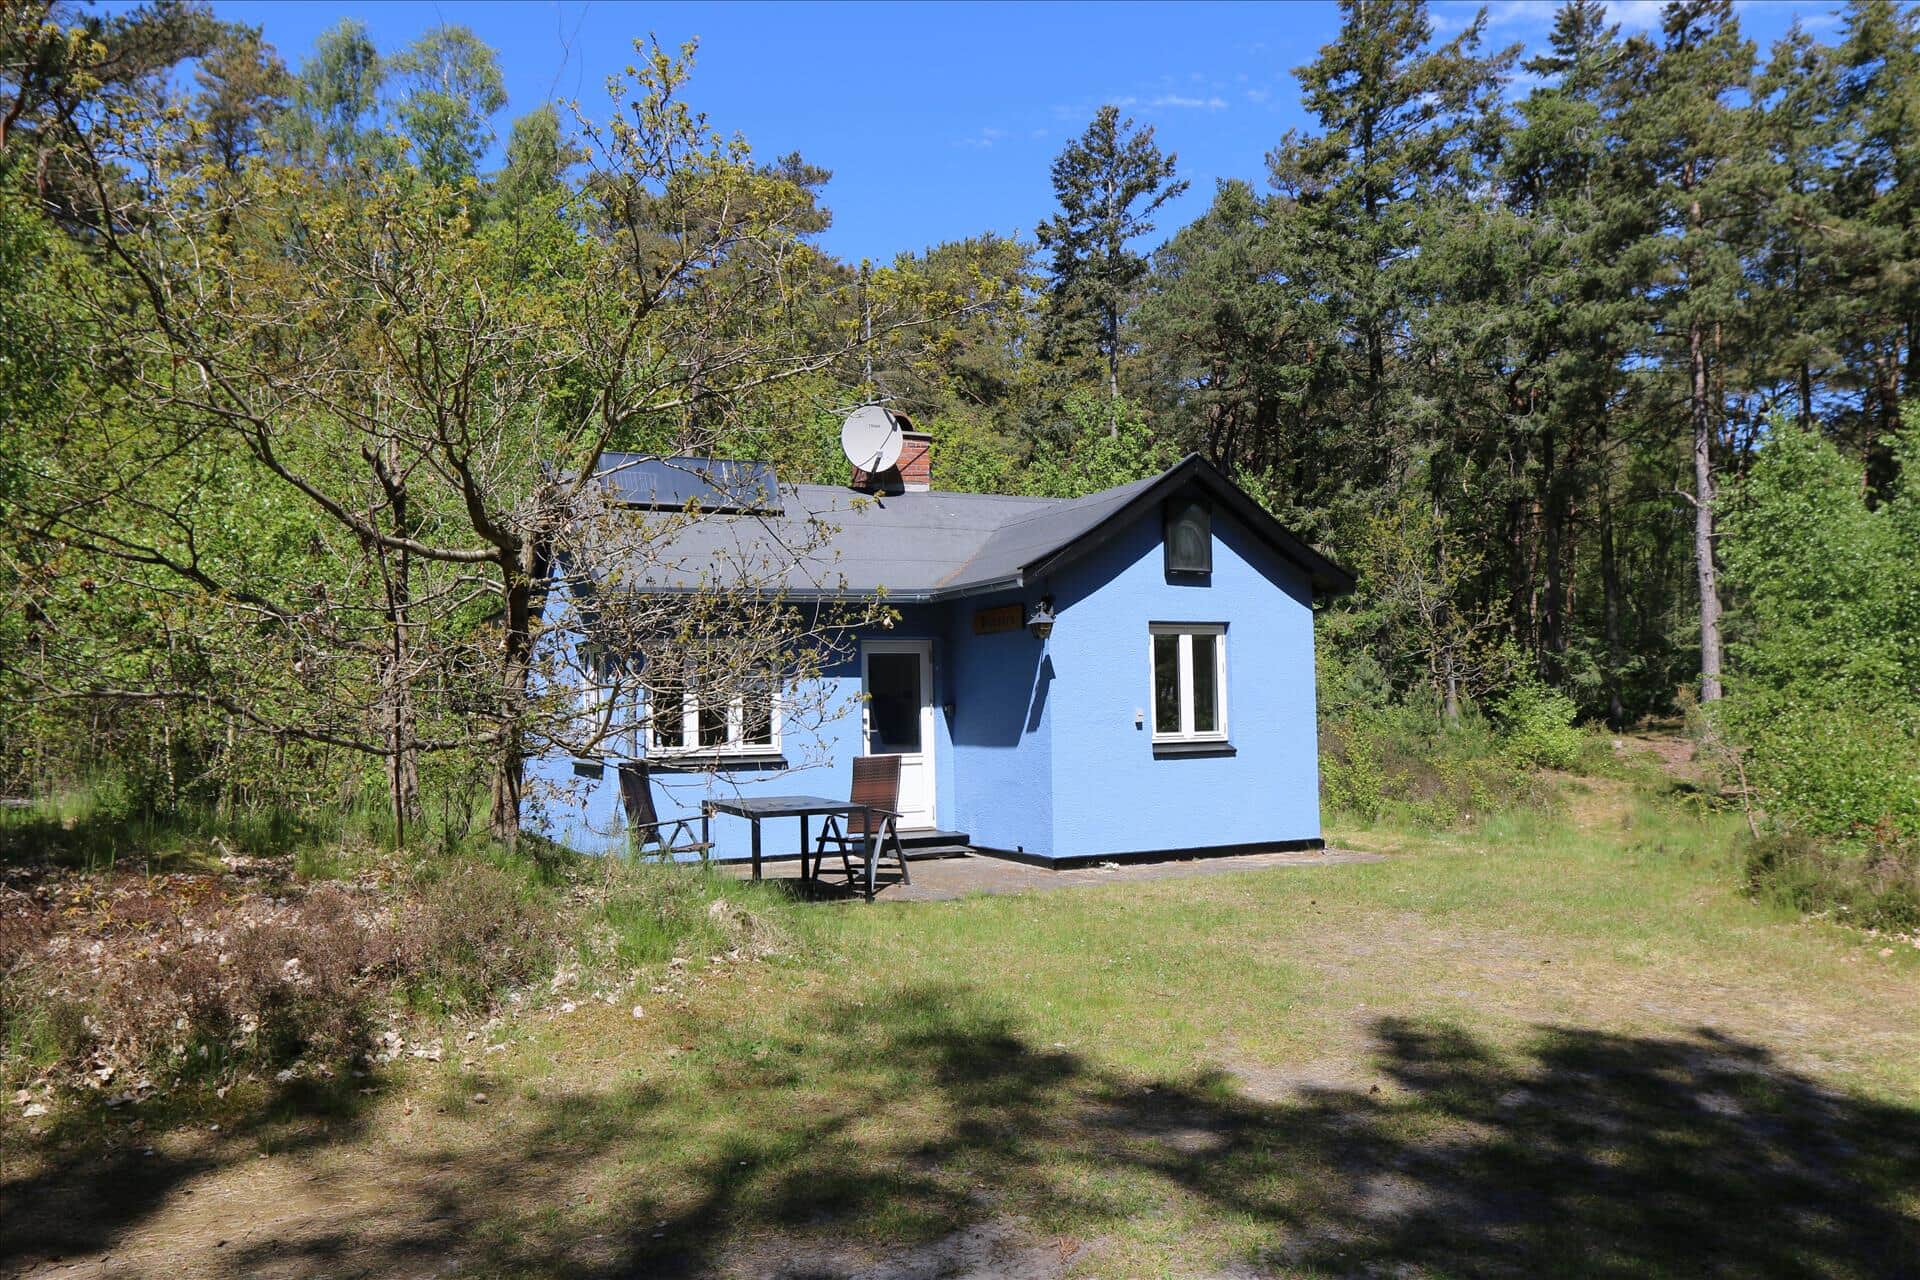 Bild 0-10 Ferienhaus 2698, Klitvej 1, DK - 3730 Nexø